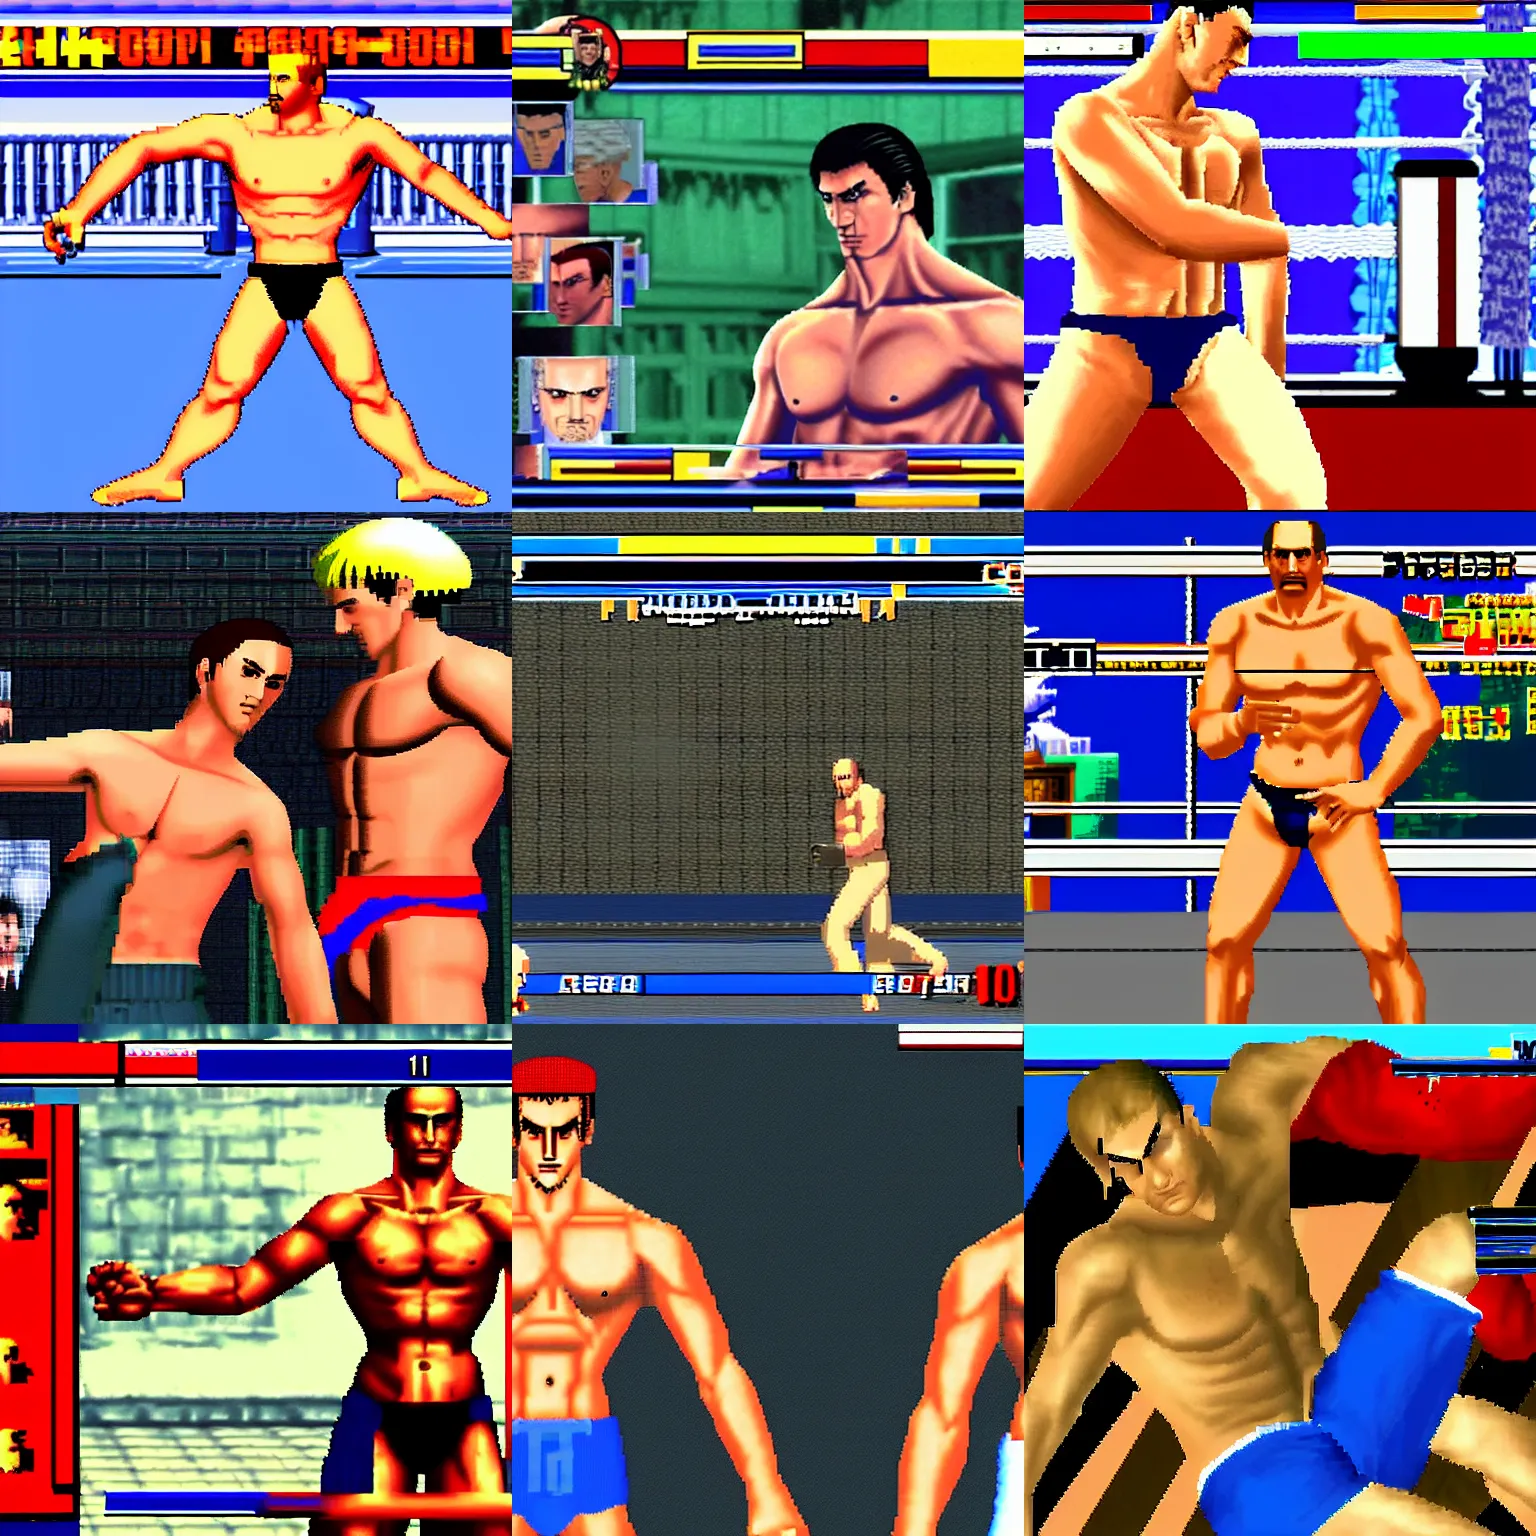 Prompt: Vladimir Putin shirtless in Virtua Fighter (1994), screenshot, arcade, high detail